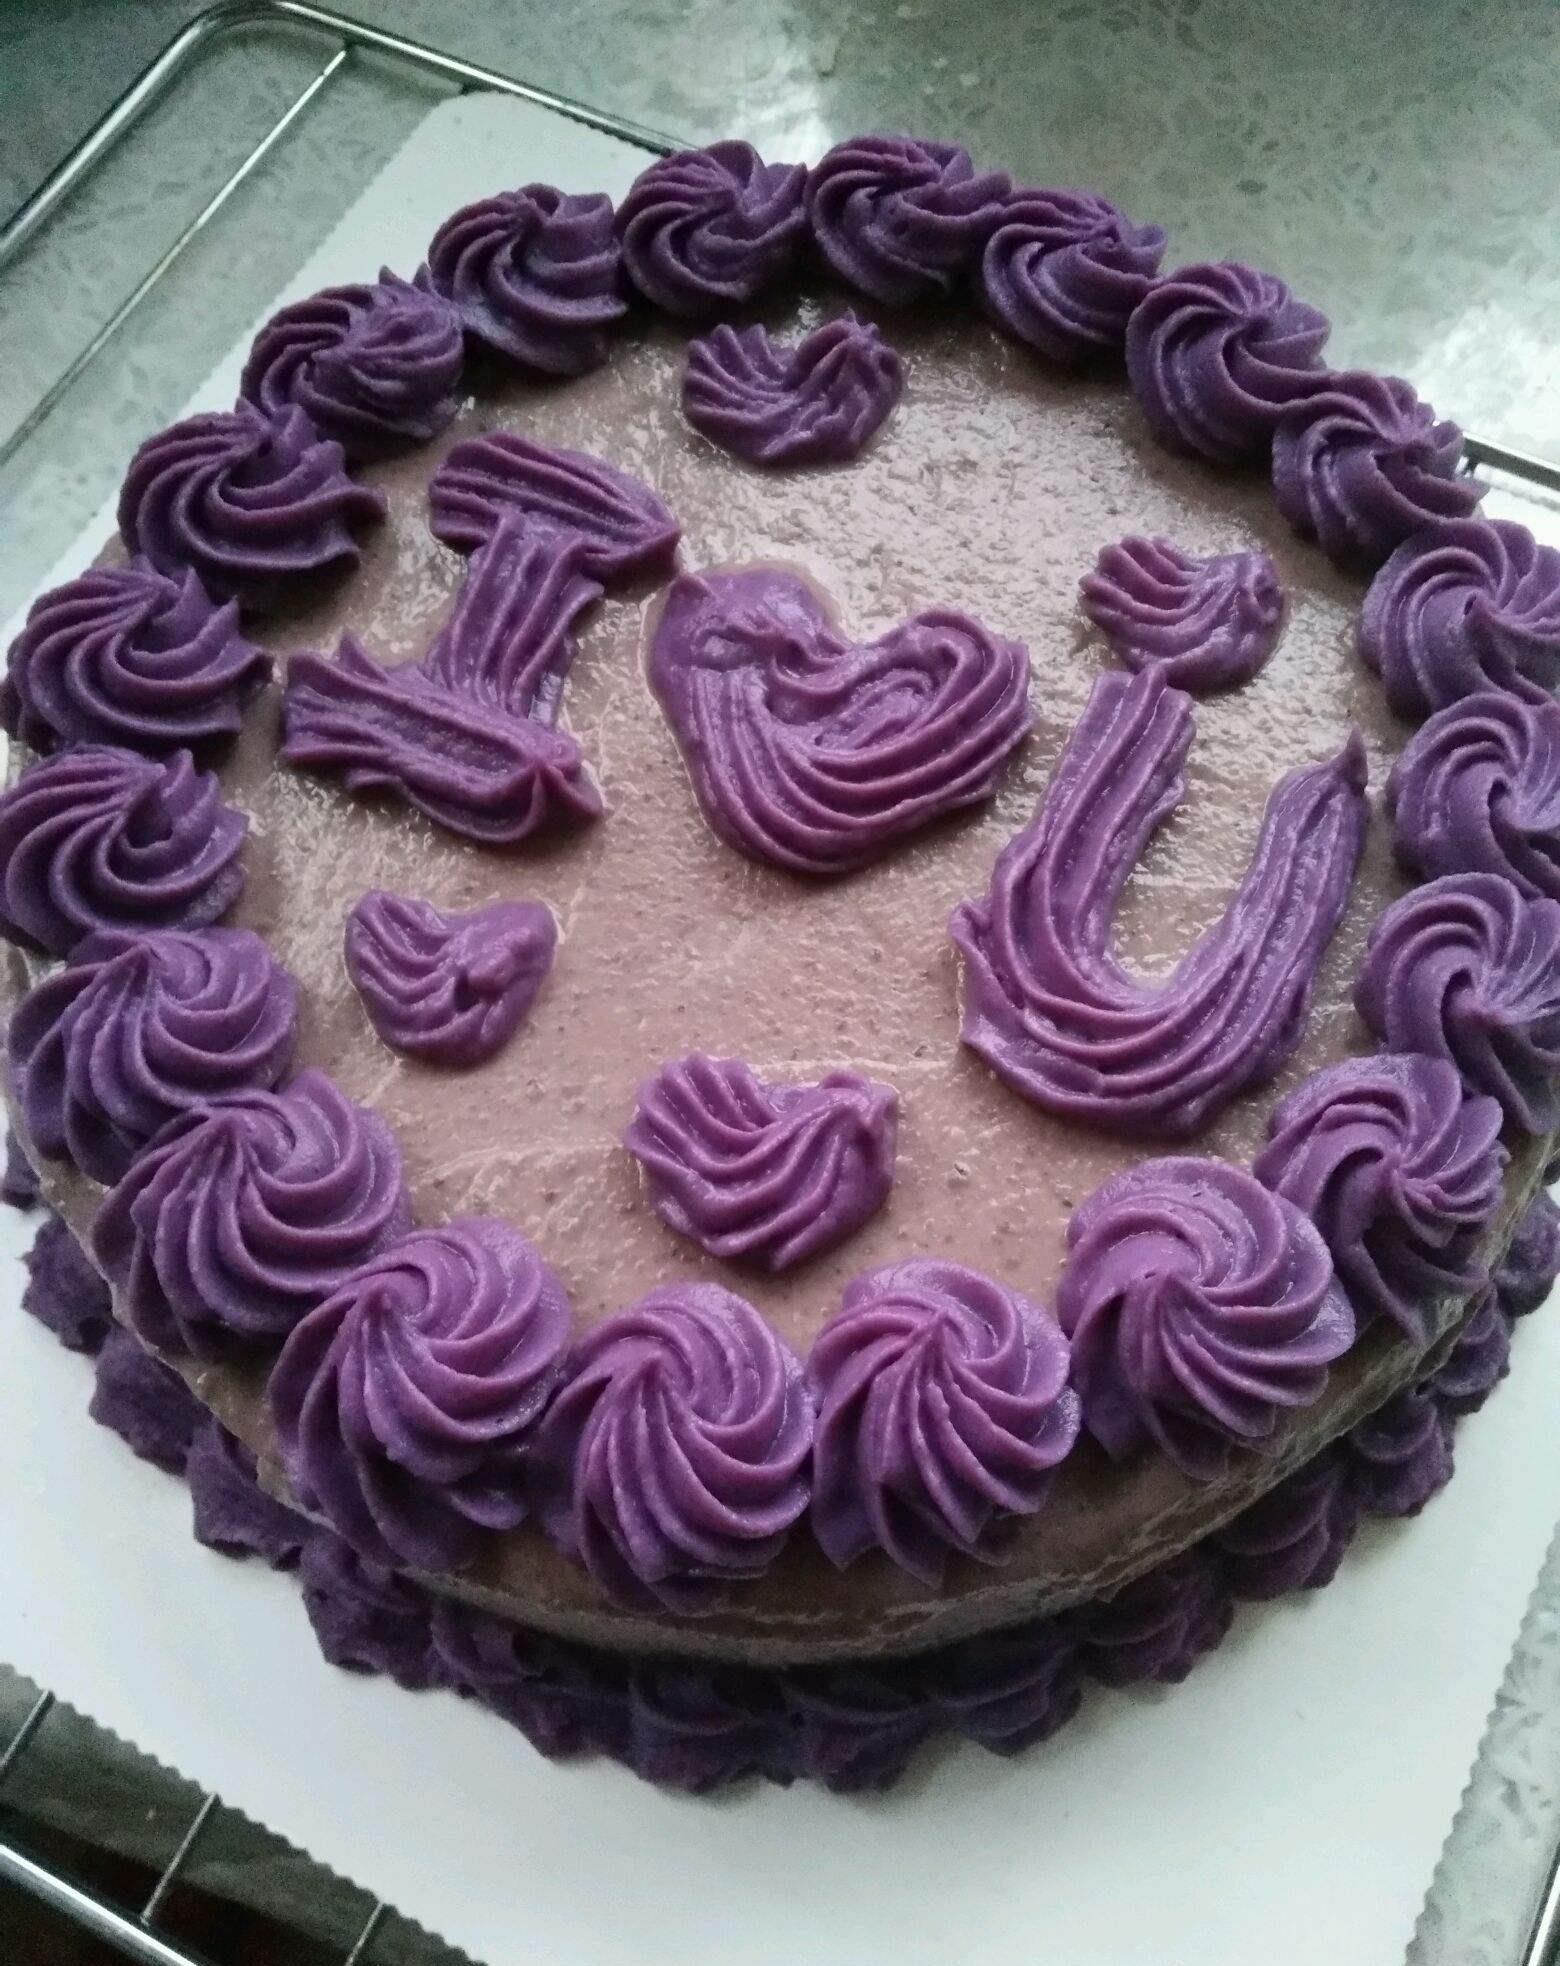 水果紫薯鲜奶蛋糕怎么做_水果紫薯鲜奶蛋糕的做法_爱美食的拉拉_豆果美食